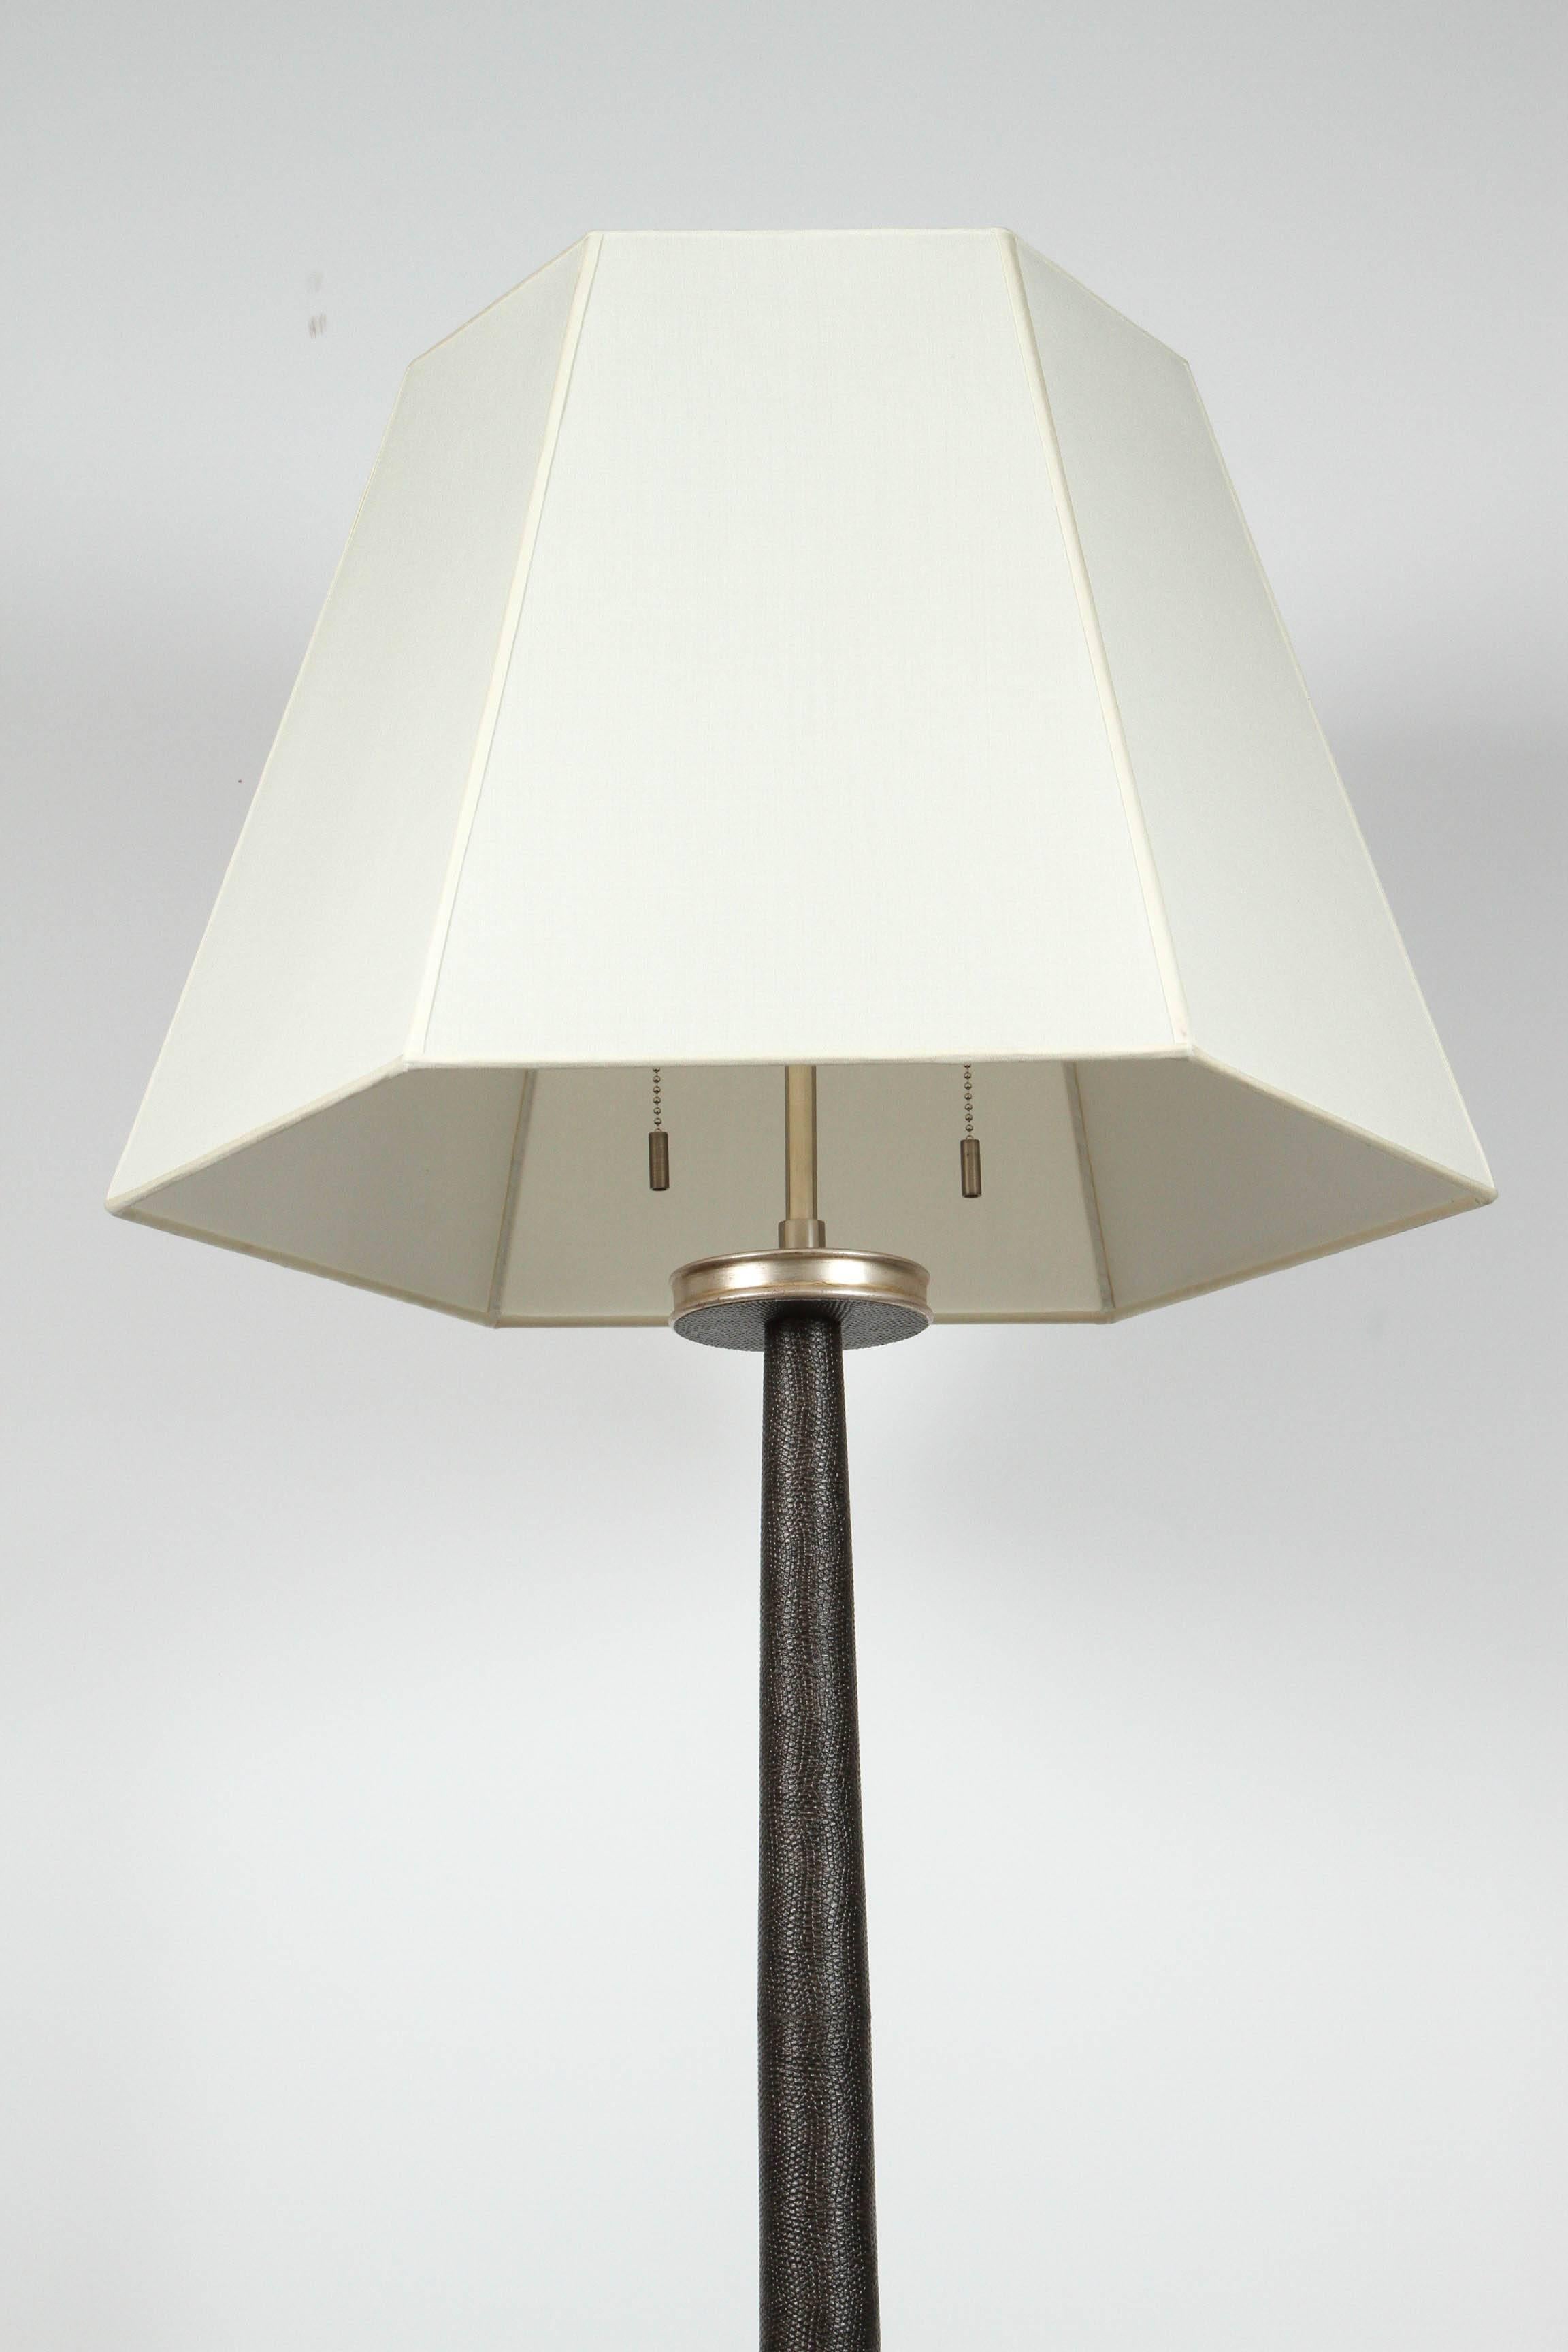 Modern Paul Marra Faux Shagreen Floor Lamp 1940s Inspired, Mocha For Sale